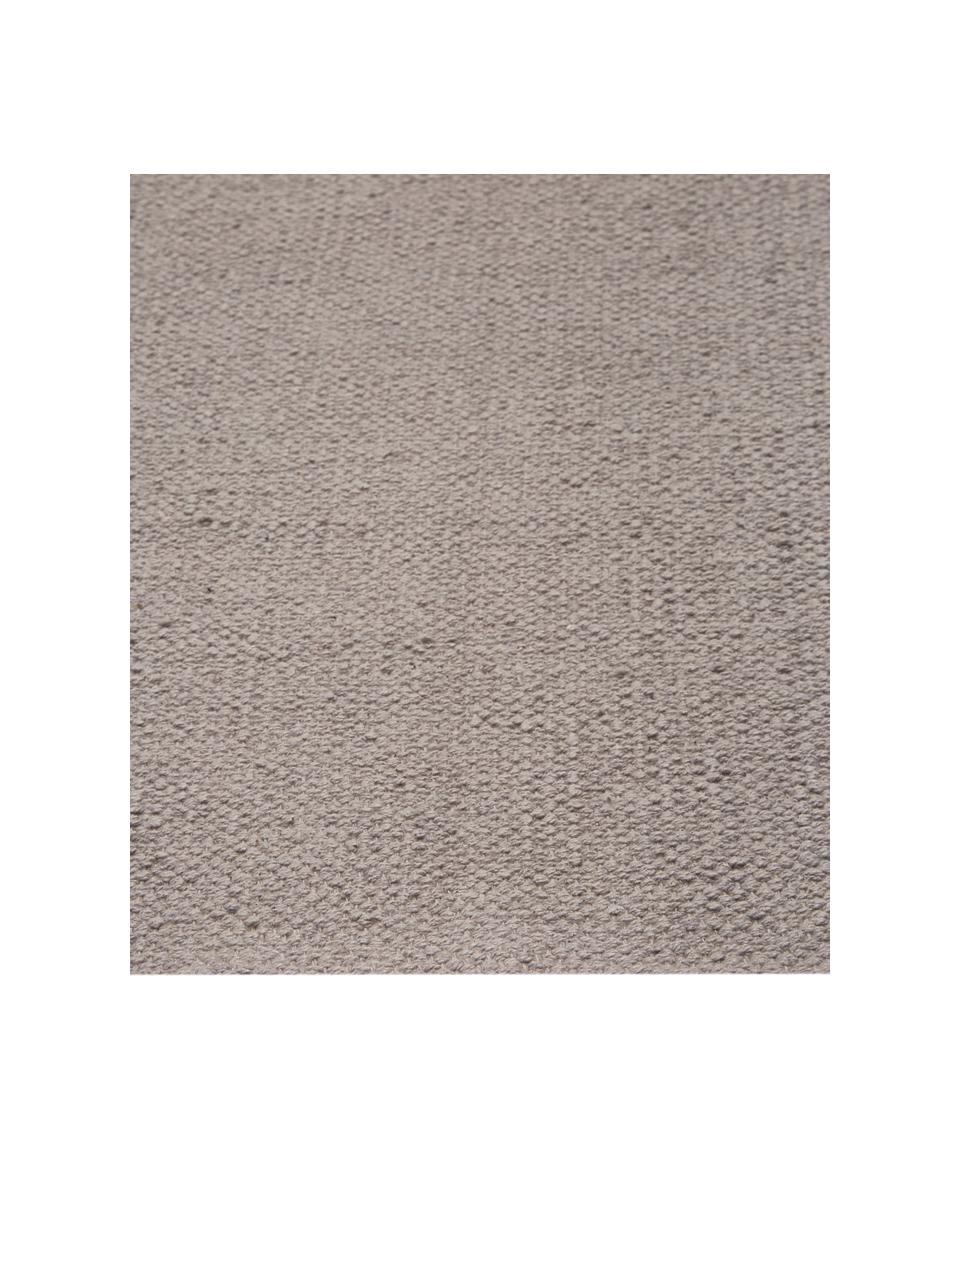 Dun  katoenen vloerkleed Agneta in grijs, handgeweven, 100% katoen, Grijs, B 120 x L 180 cm (maat S)